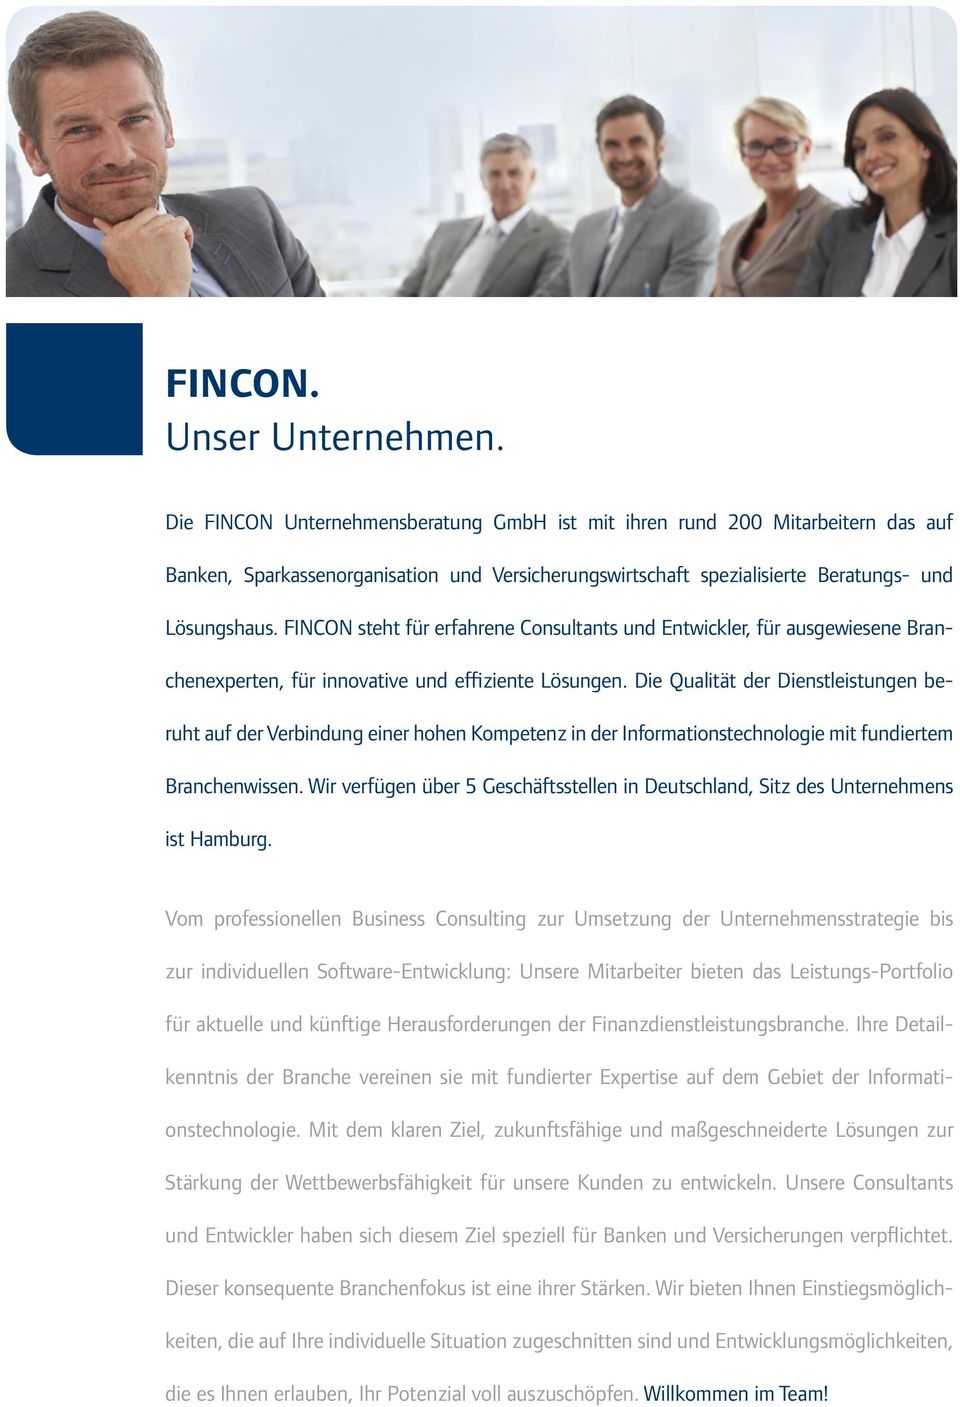 FINCON steht für erfahrene Consultants und Entwickler, für ausgewiesene Branchenexperten, für innovative und effiziente Lösungen.